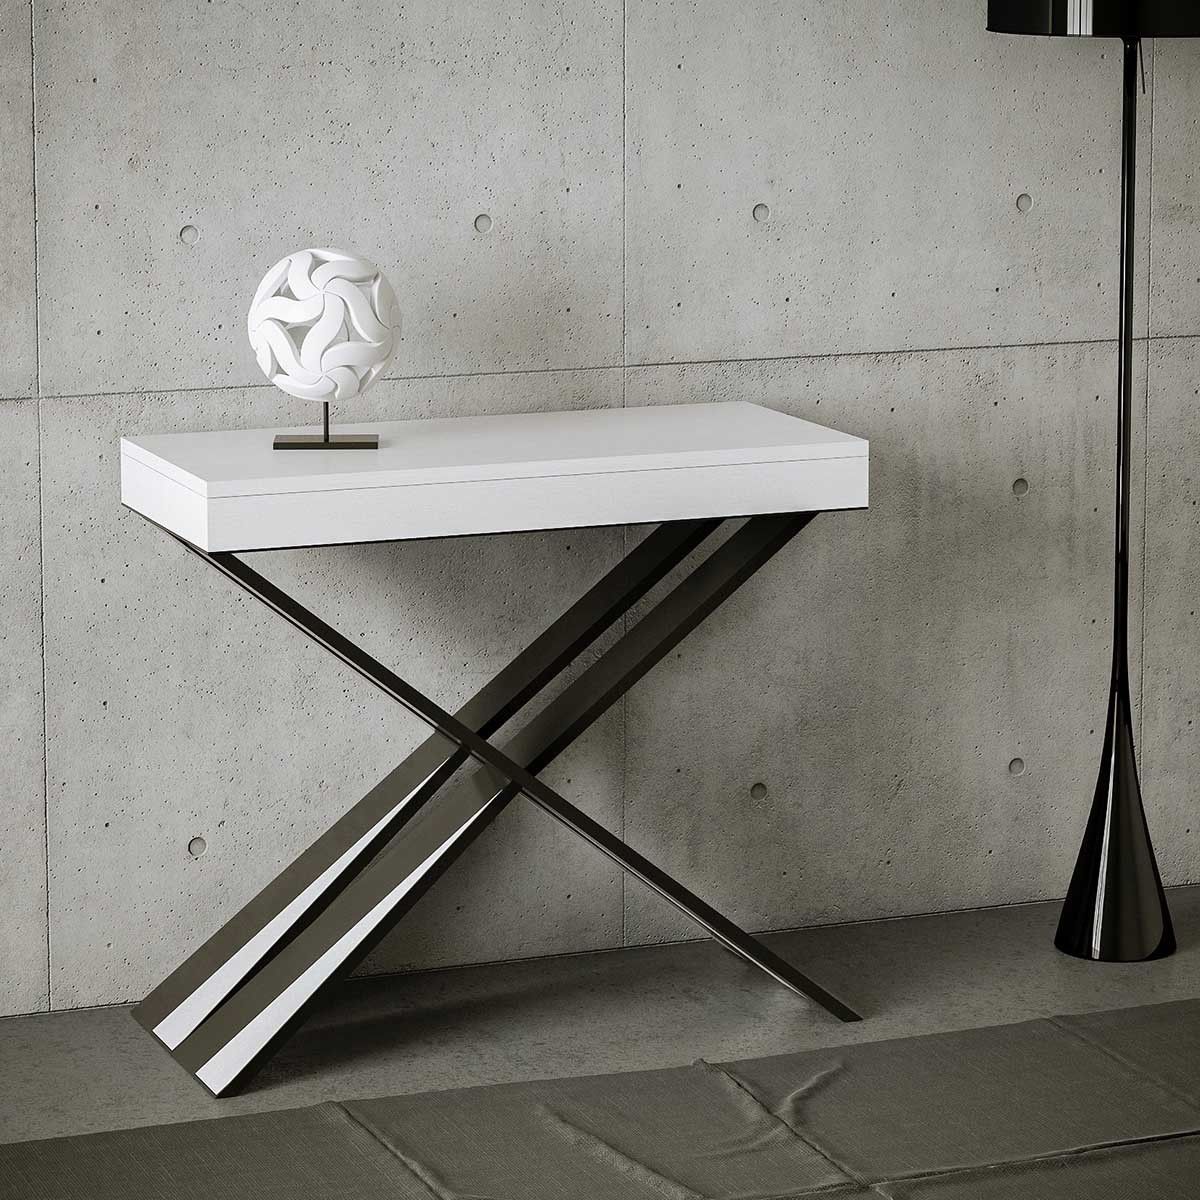 Table console : une sélection de 5 modèles design les plus chers récemment vendus sur eBay ! 